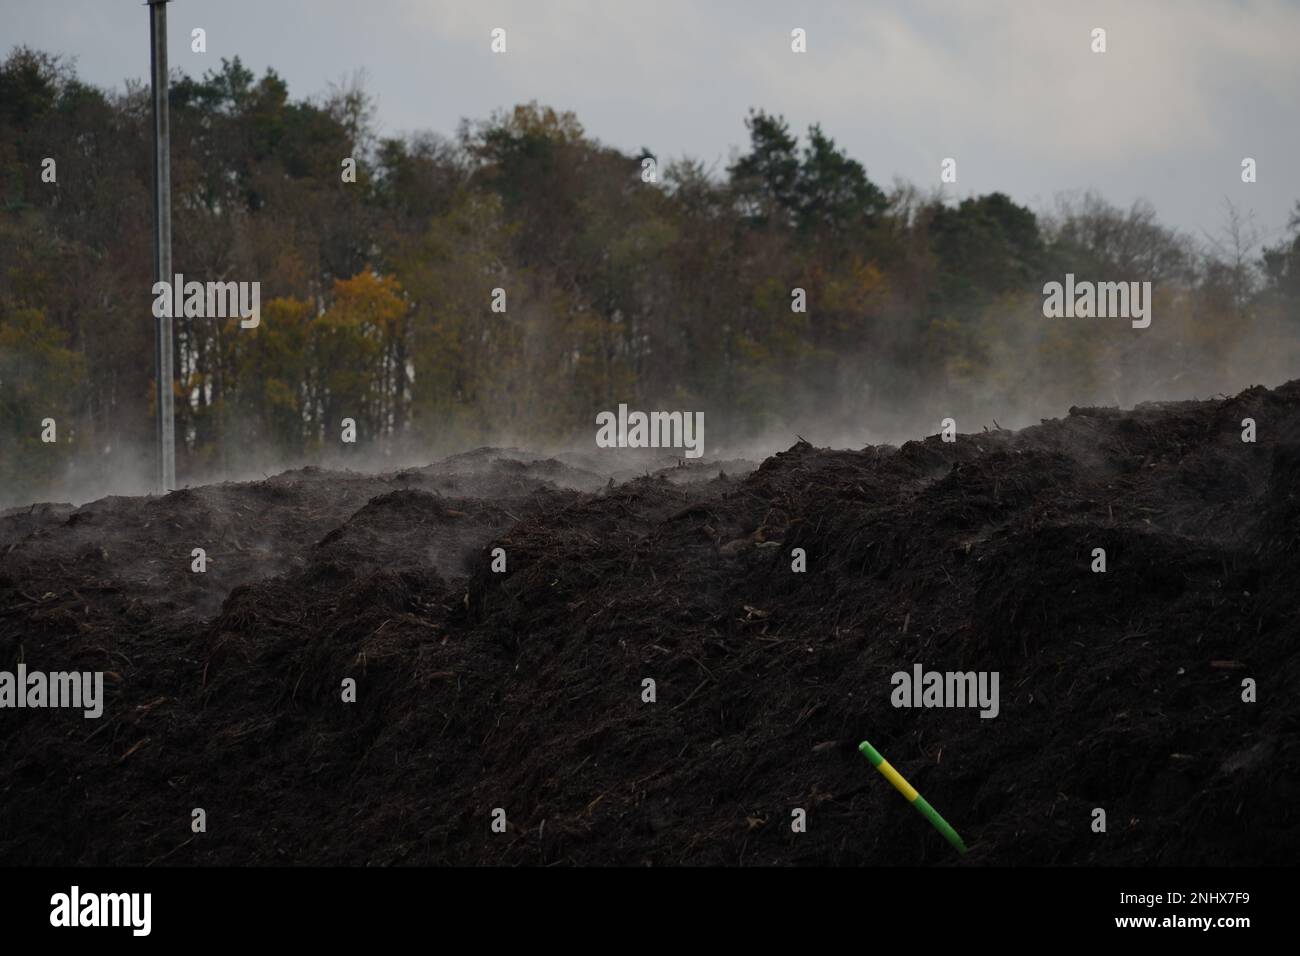 Dampfnebel über schwarzer Biomasse oder organischem Material, das von einer Starscreen-Maschine erzeugt wird. Organisches Material kann kompostiert und zurückgegeben werden. Stockfoto